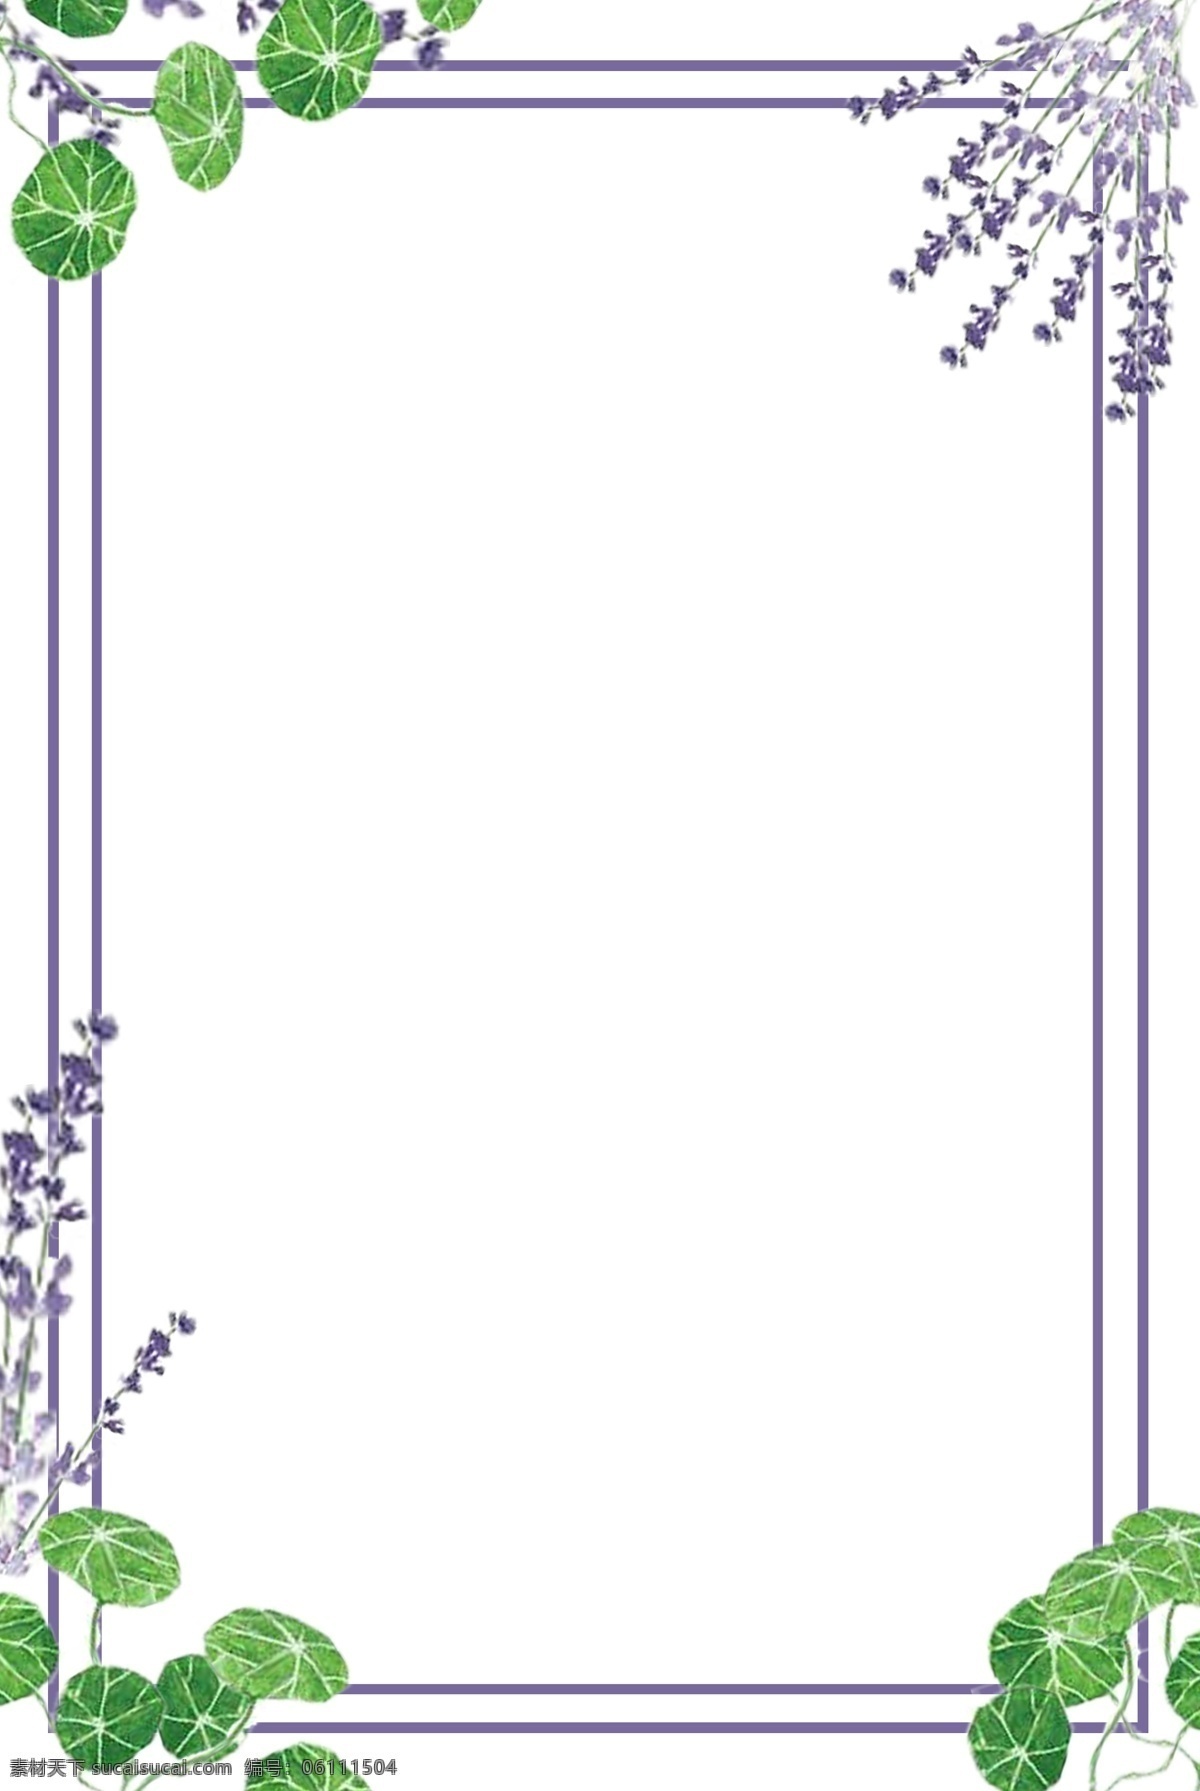 手绘 唯美 紫色 花 物语 边框 手绘边框 花物语边框 唯美季边框 高雅型边框 淡雅边框 大气边框 紫色边框 可用于学习 交流 海拔制作 装饰等